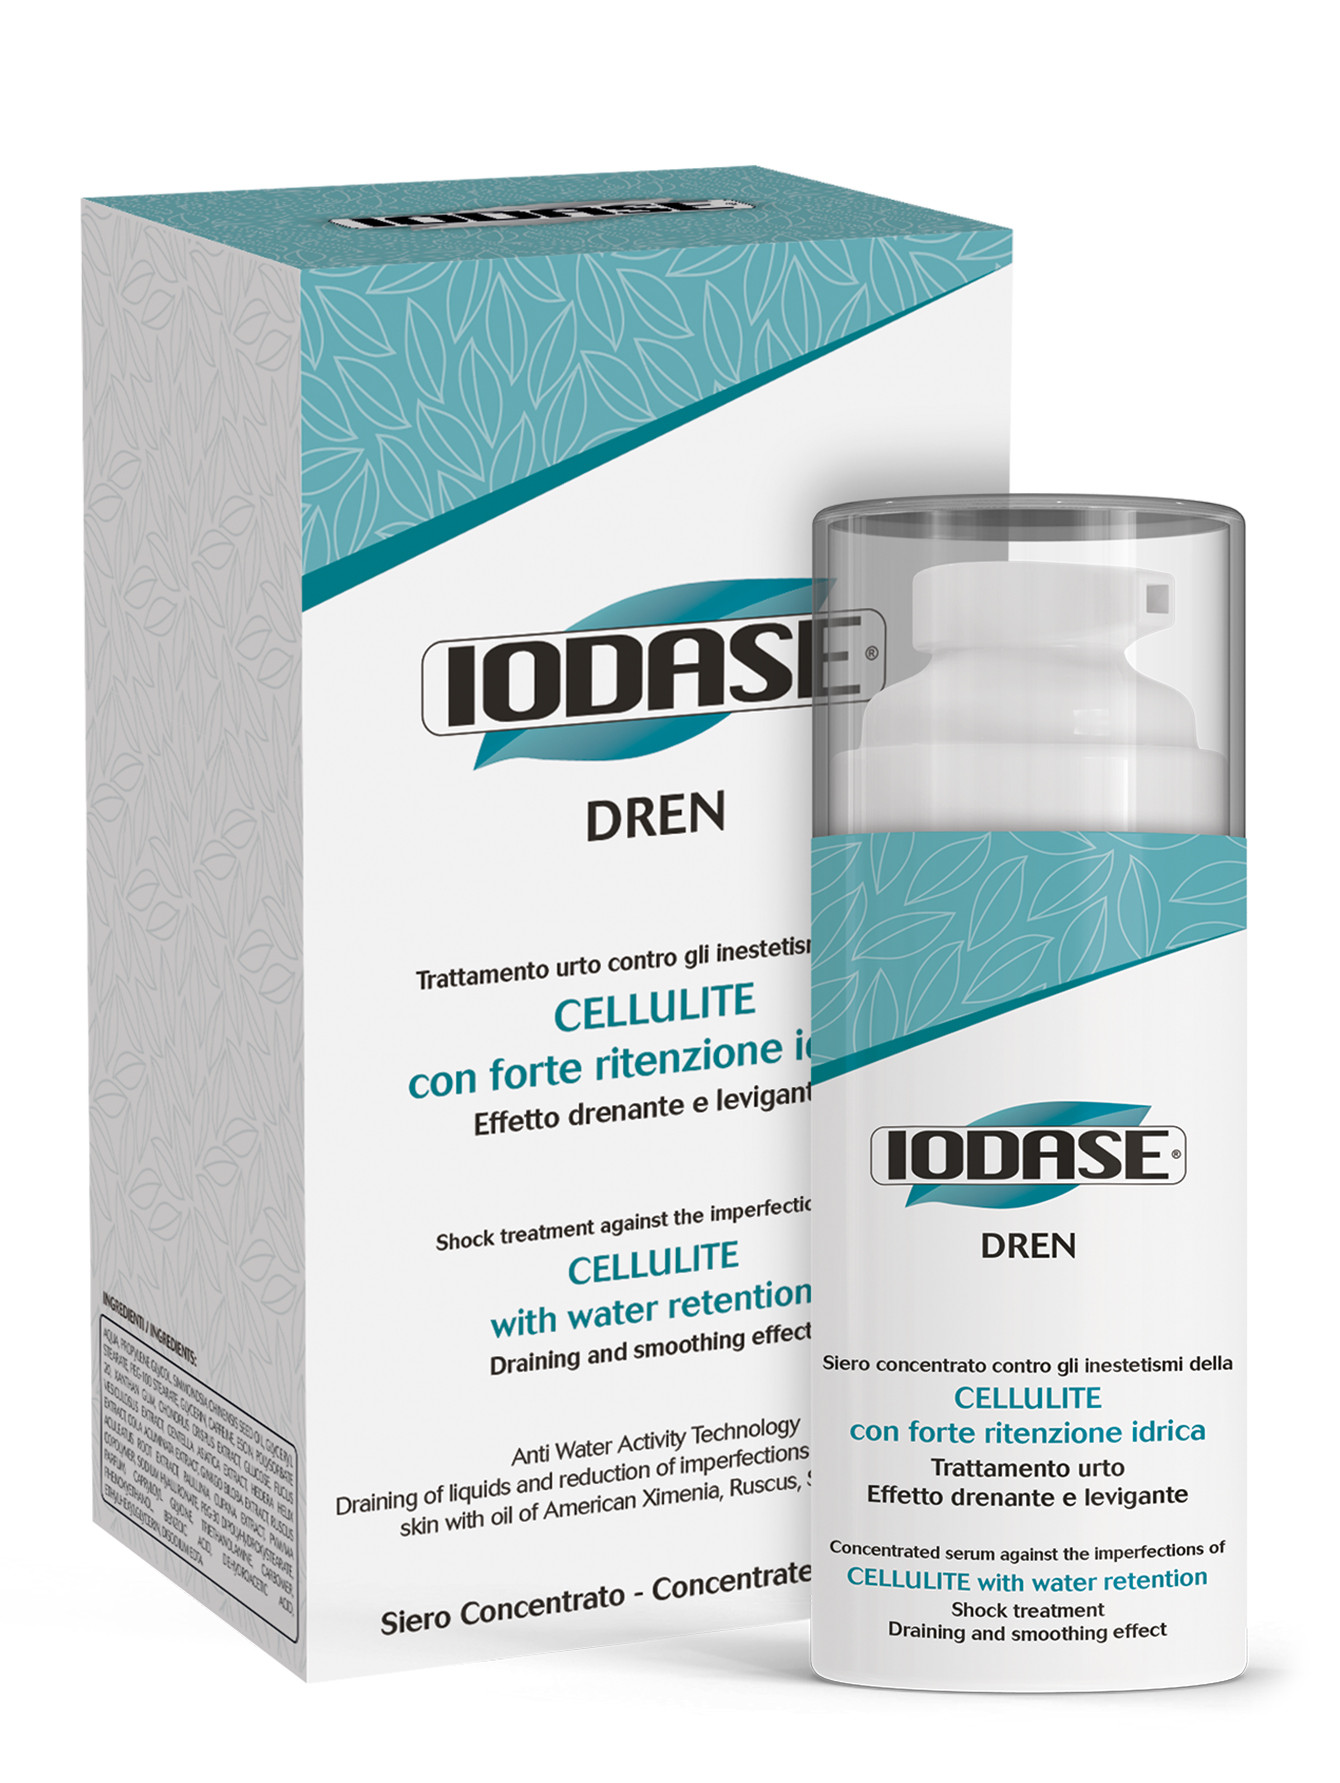 Сыворотка для тела Iodase Dren serum 100 мл Body Care - Общий вид